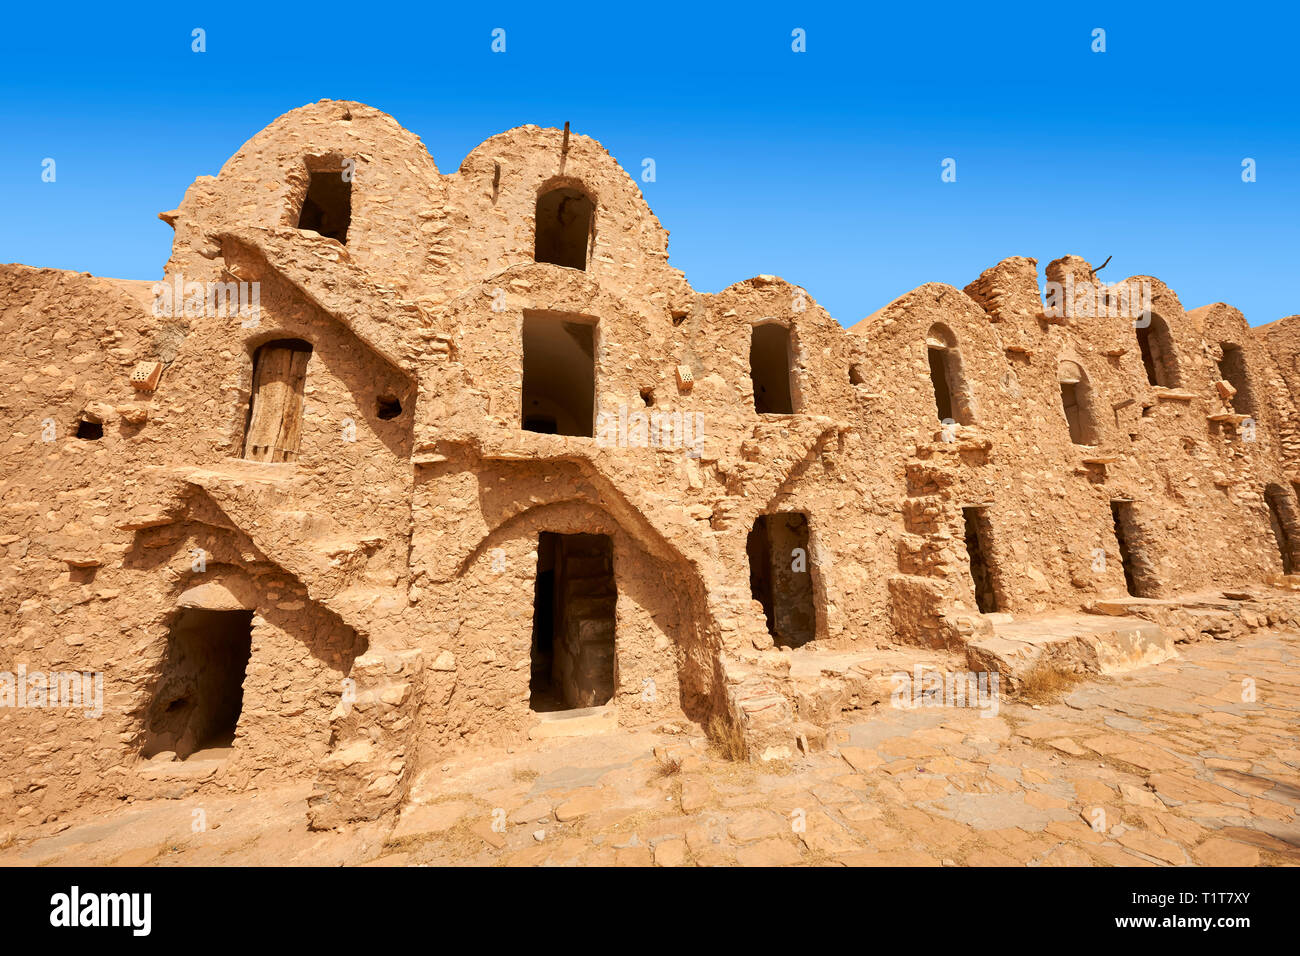 Le nord du Sahara silos de stockage ghorfa de la brique de boue traditionnel berbère Ksar fortifié de Hedada ou Hadada, près de l'Tetouin, Tunisie, le paramè tres Banque D'Images